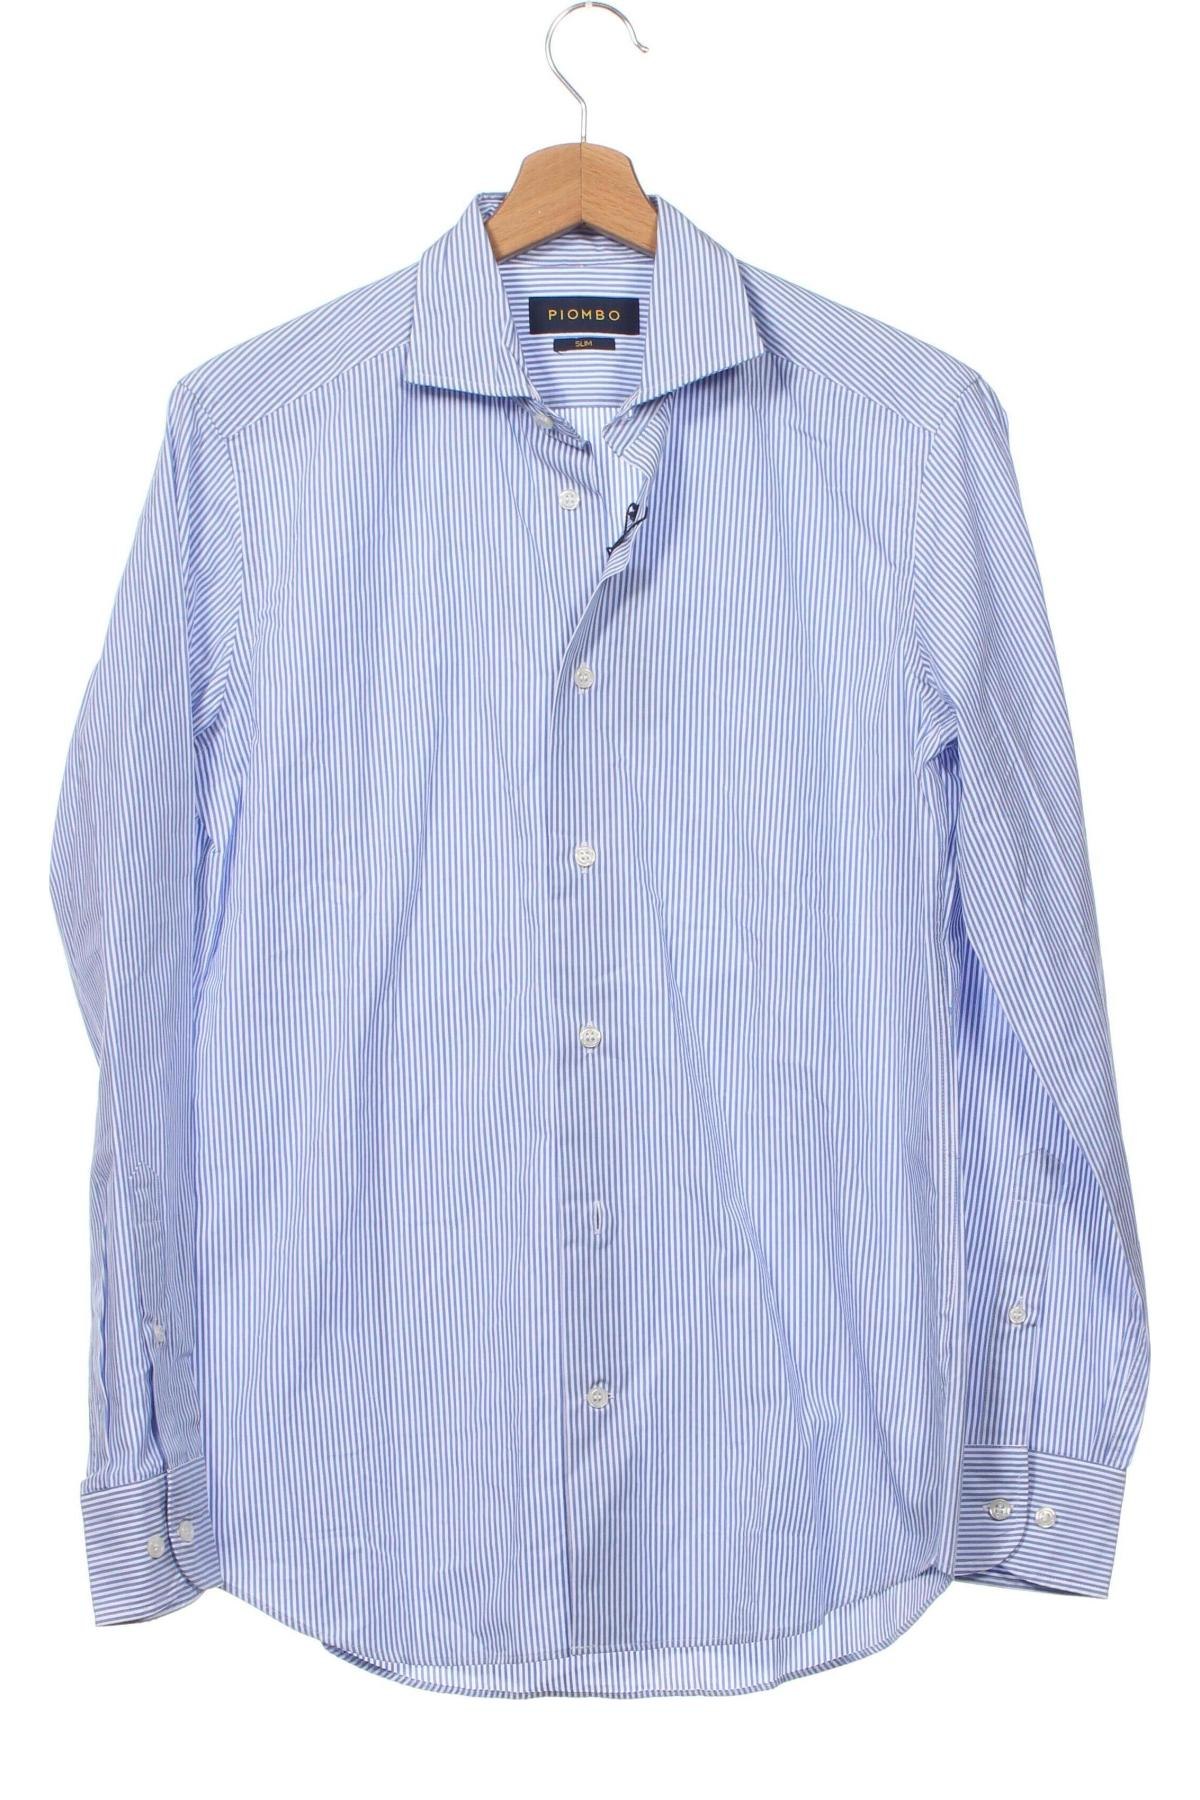 Ανδρικό πουκάμισο Piombo, Μέγεθος S, Χρώμα Πολύχρωμο, Τιμή 60,31 €